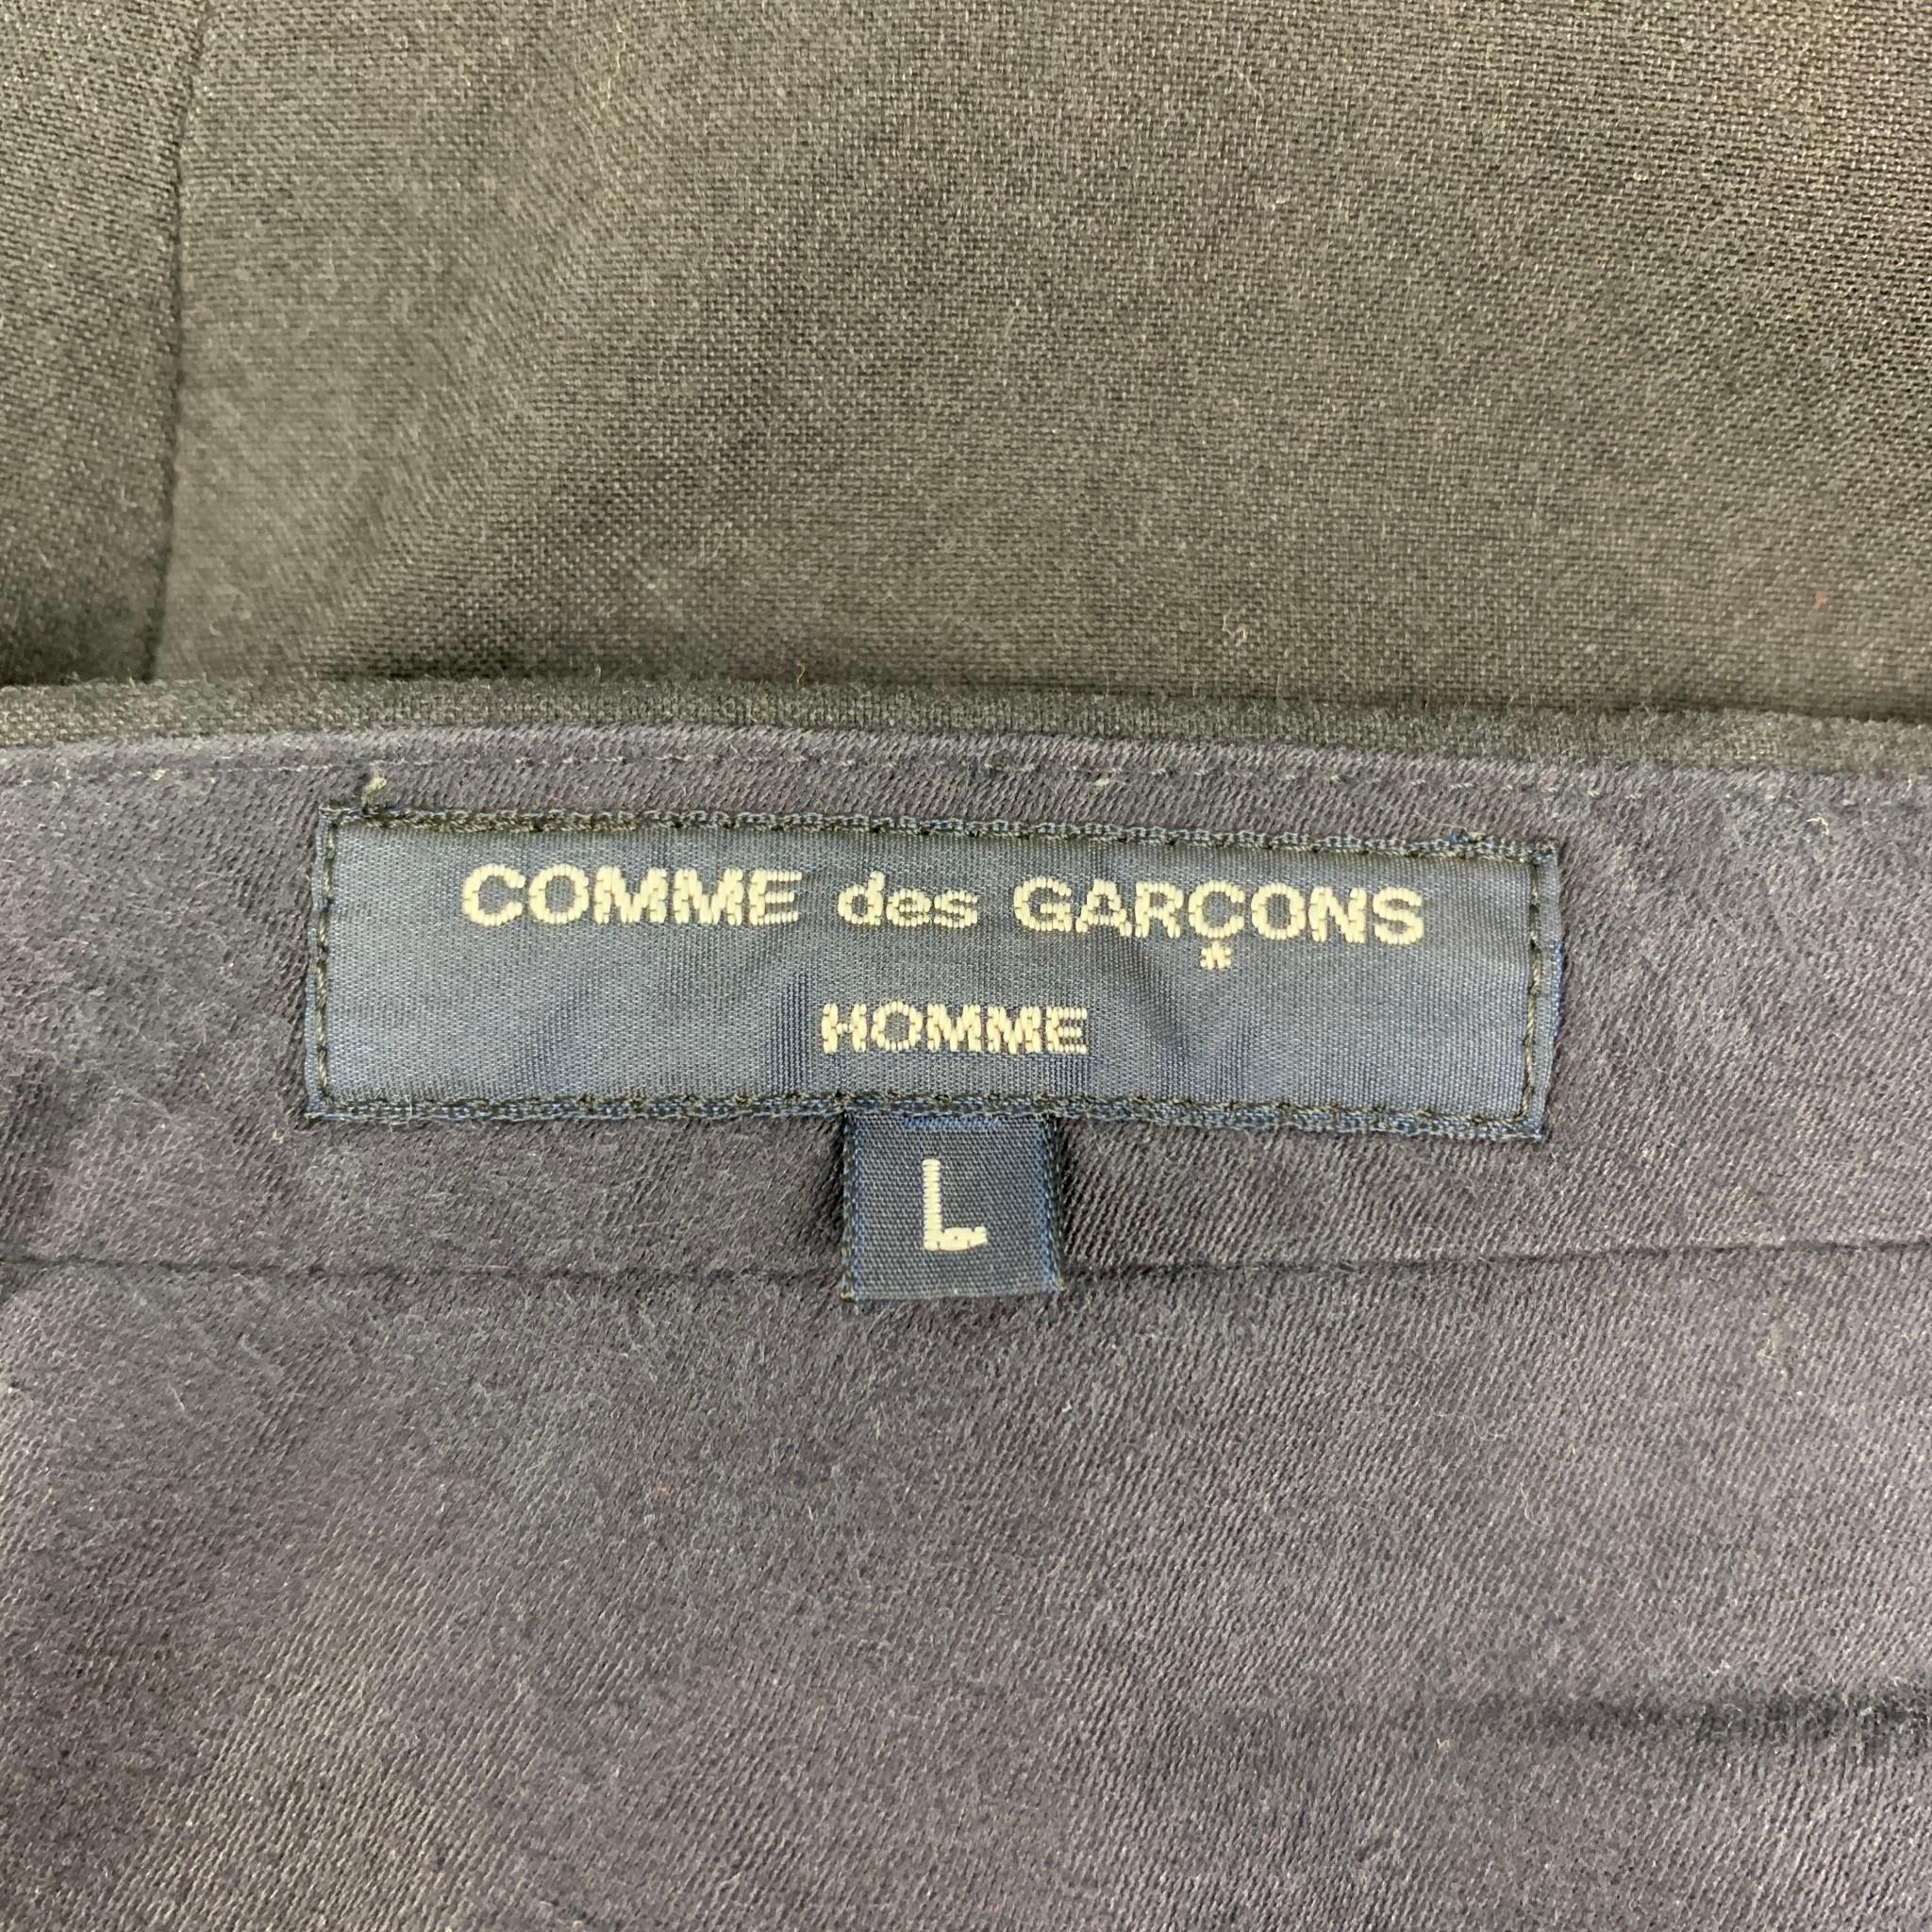 COMME des GARCONS HOMME Size L Navy Patchwork Nylon Cotton Casual Pants 1